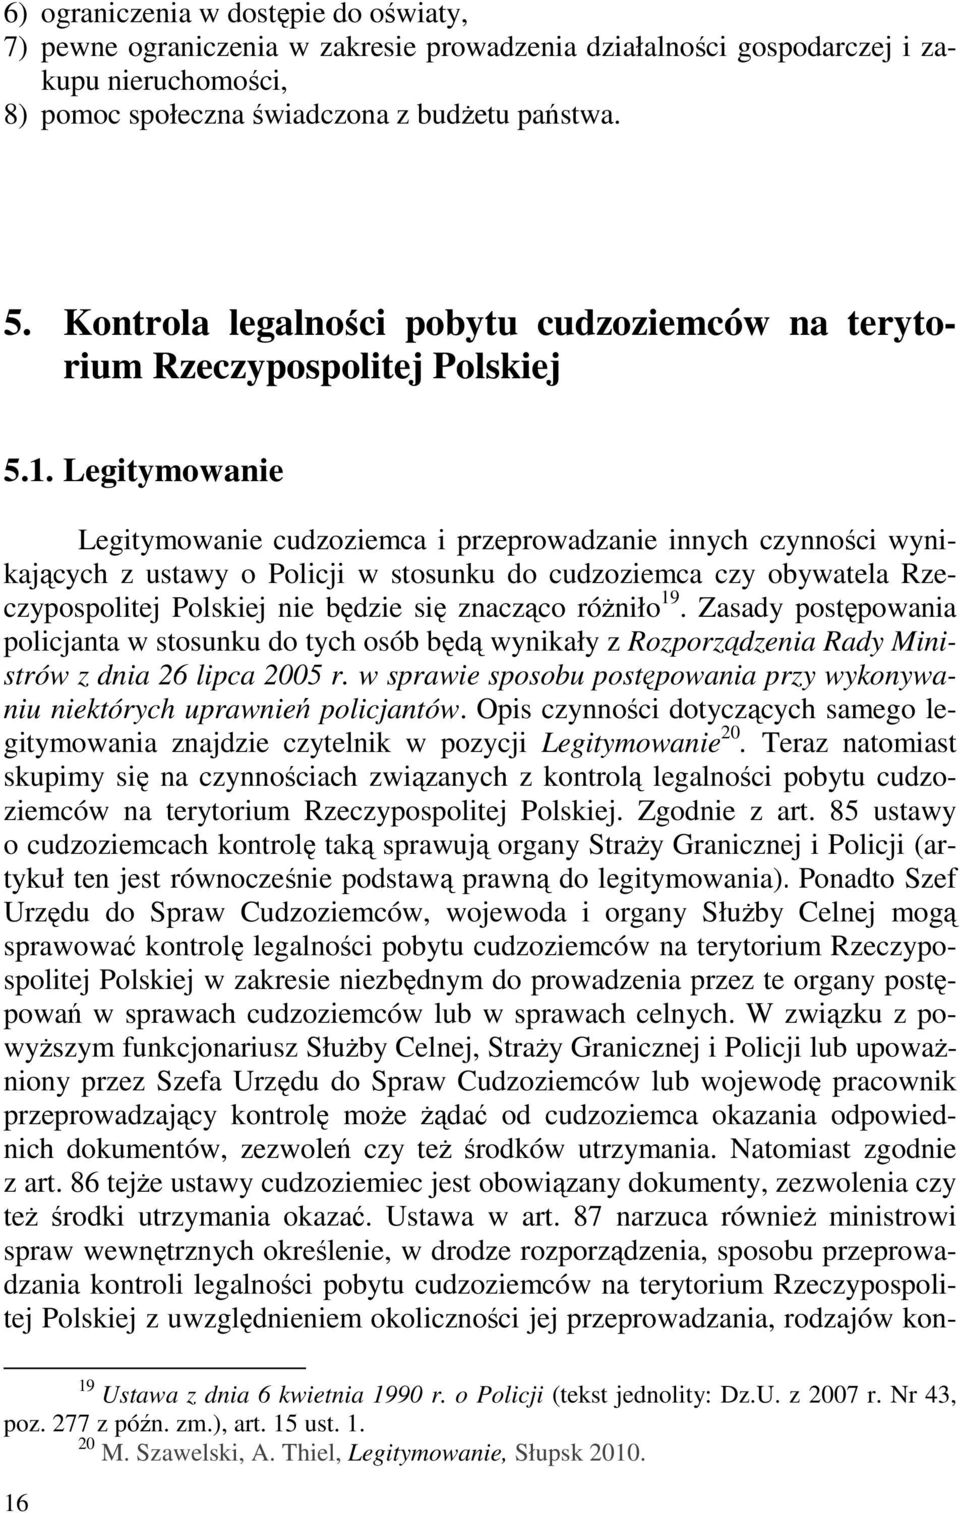 Legitymowanie Legitymowanie cudzoziemca i przeprowadzanie innych czynności wynikających z ustawy o Policji w stosunku do cudzoziemca czy obywatela Rzeczypospolitej Polskiej nie będzie się znacząco